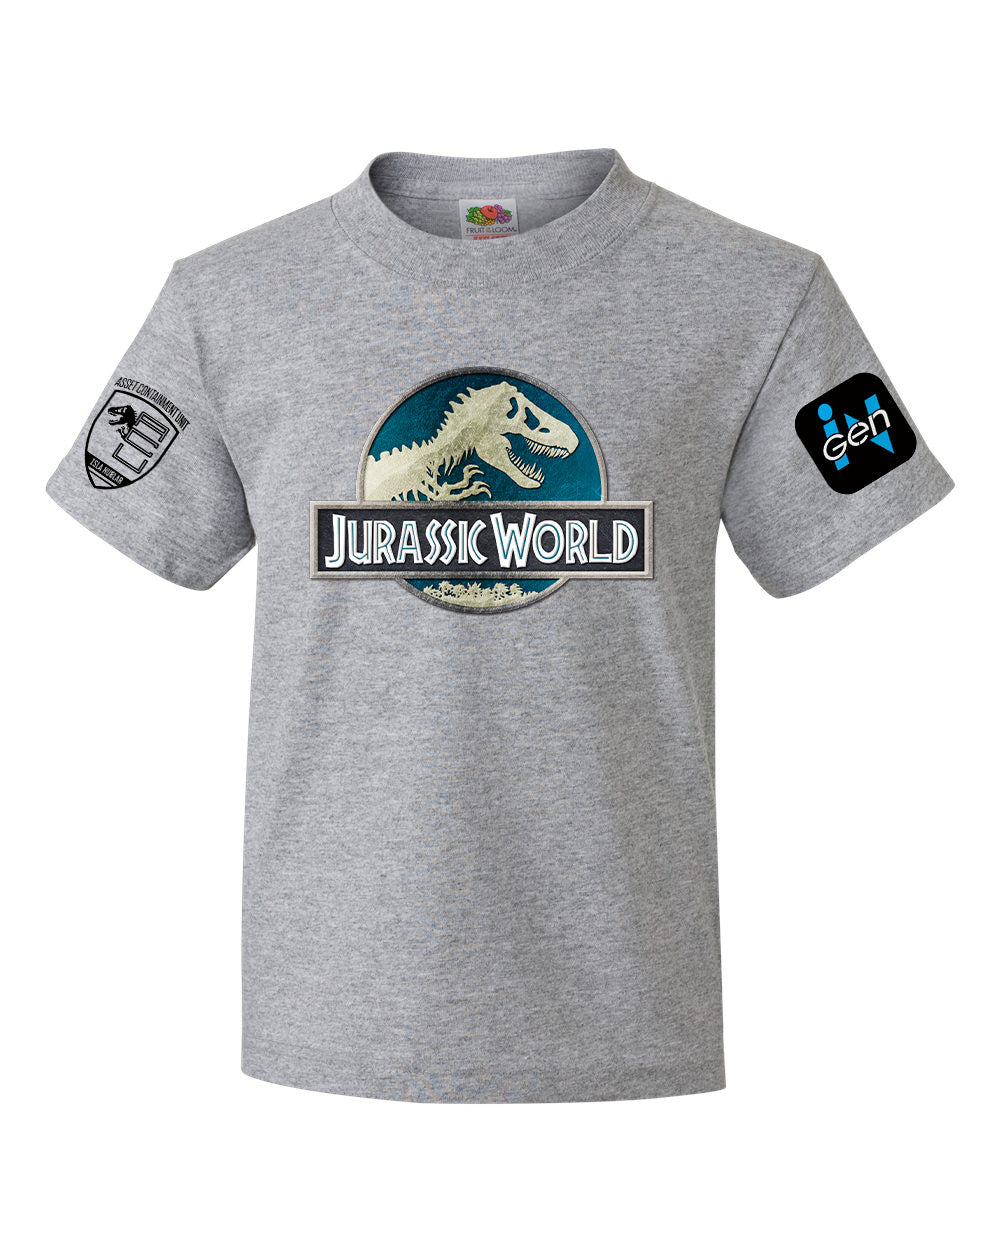 Jurassic World Shirt, Roblox Wiki